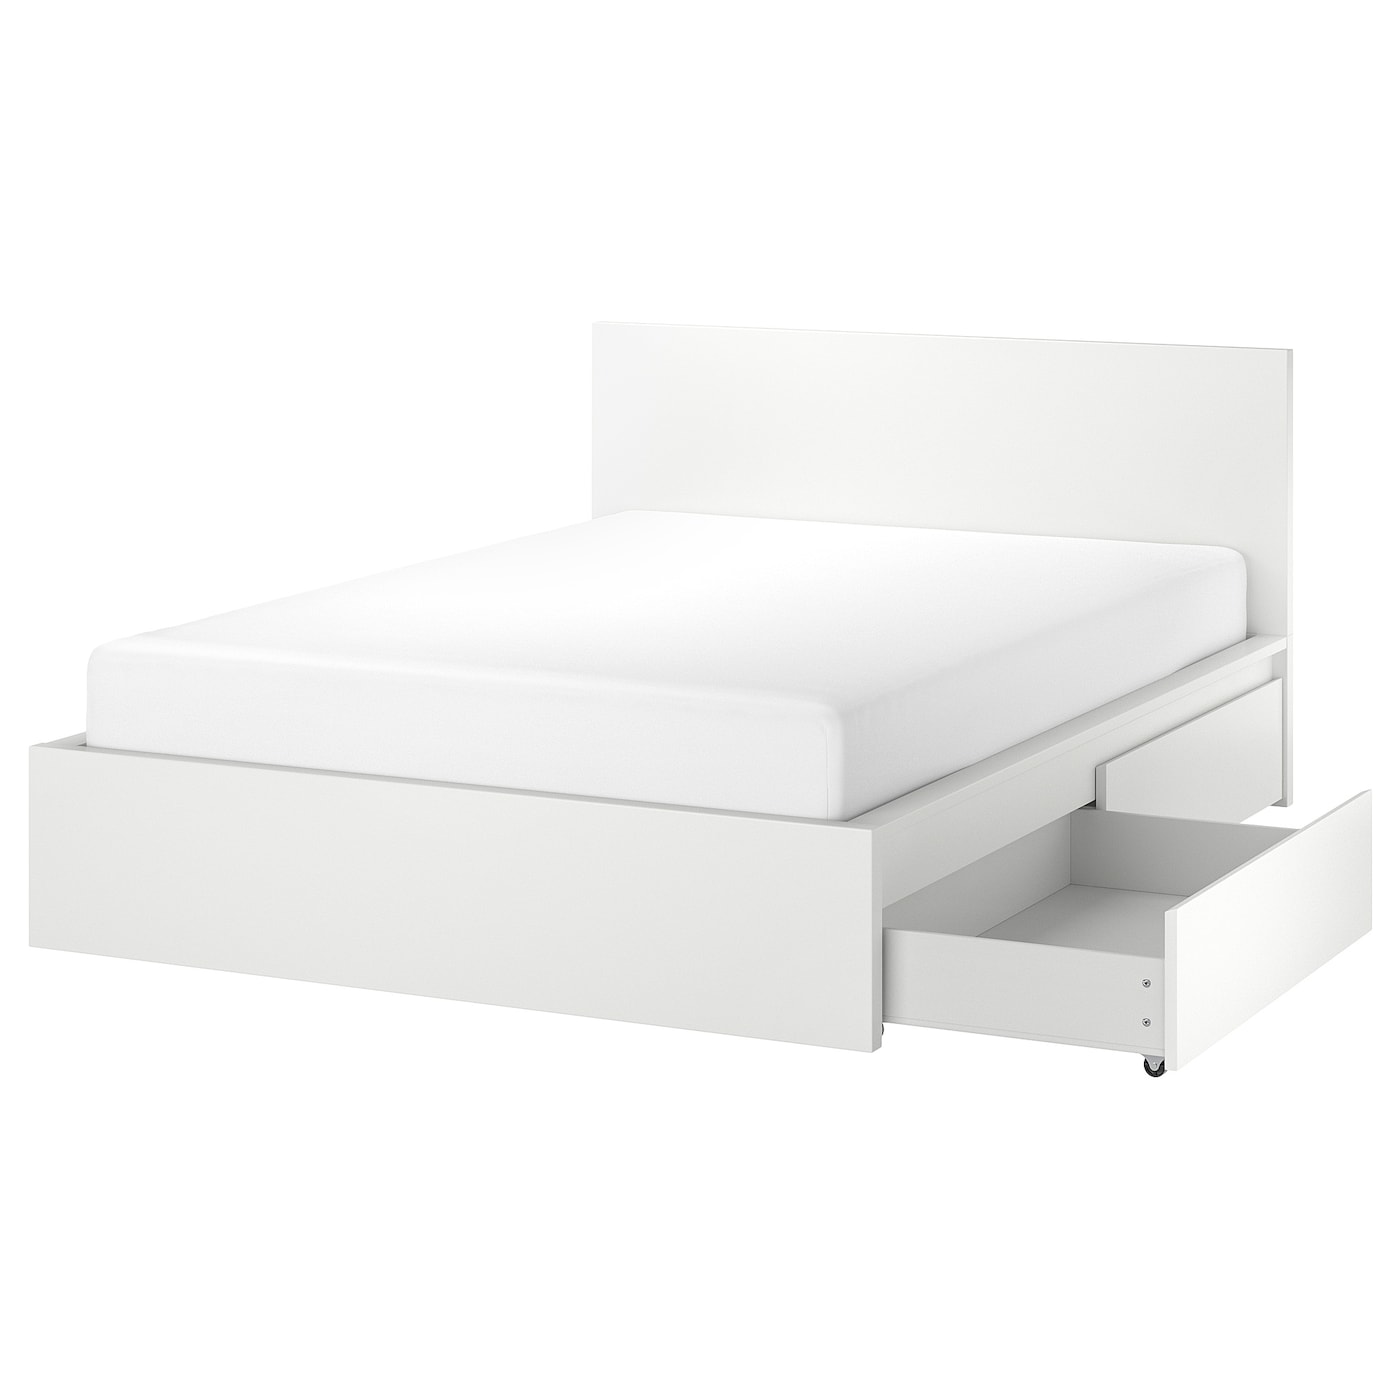 Каркас кровати с 2 ящиками для хранения - IKEA MALM, 200х140 см, белый, МАЛЬМ ИКЕА